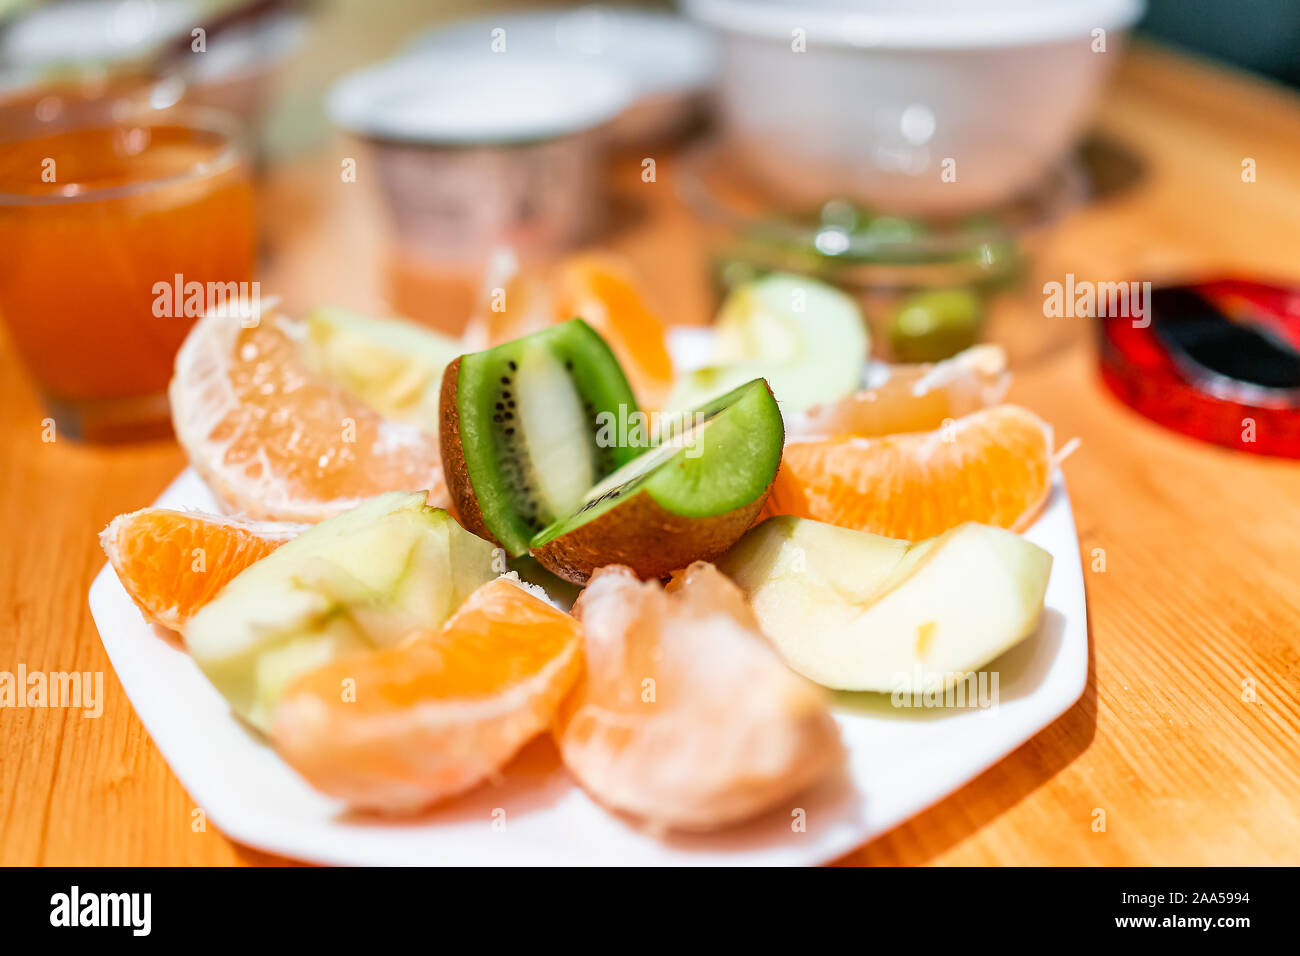 Placa blanca de los alimentos agrios rodajas de fruta en mesa de madera para desayuno con kiwi, manzana verde y grapefuit Foto de stock